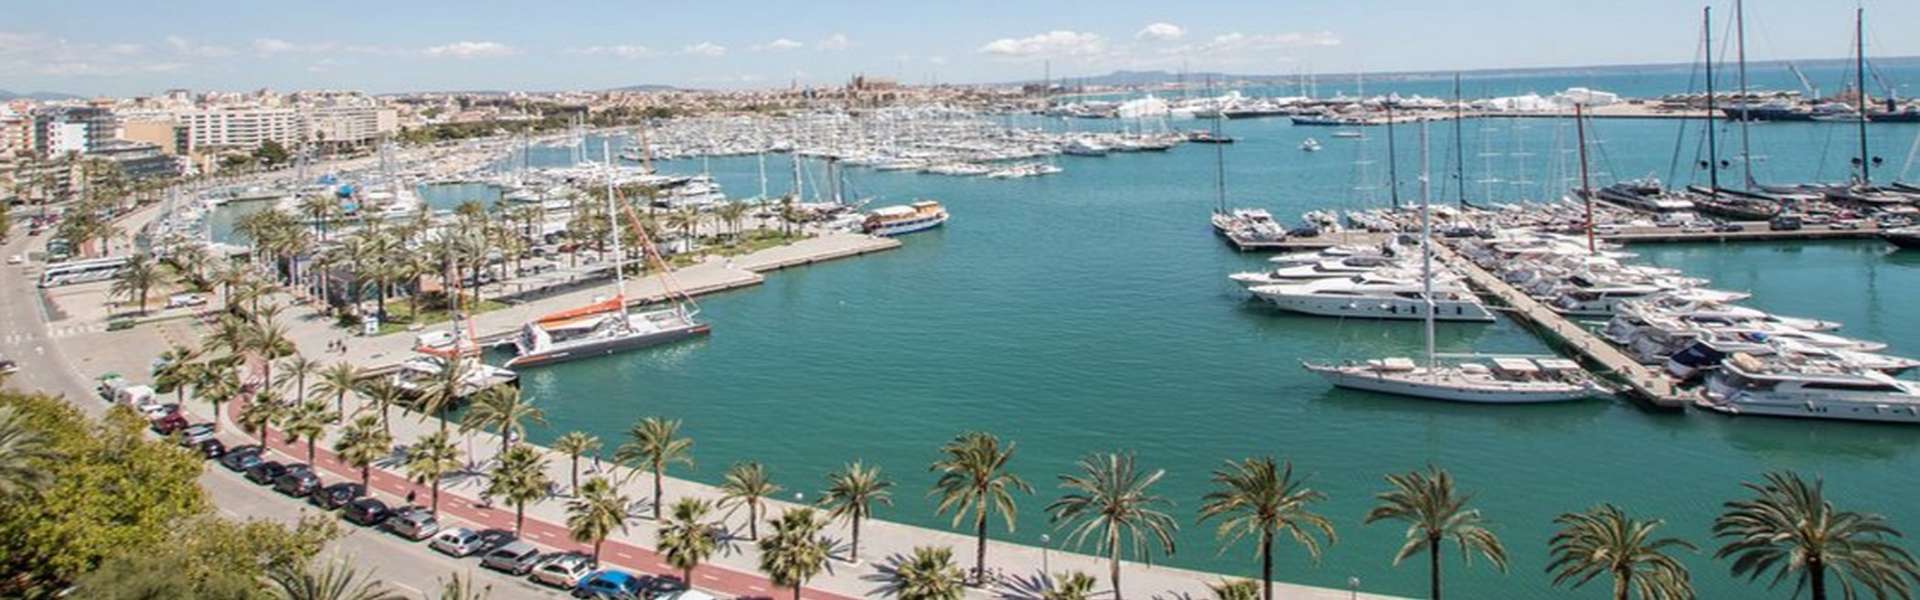 Palma/Paseo Marítimo - Exclusivo apartamento en primera línea de mar